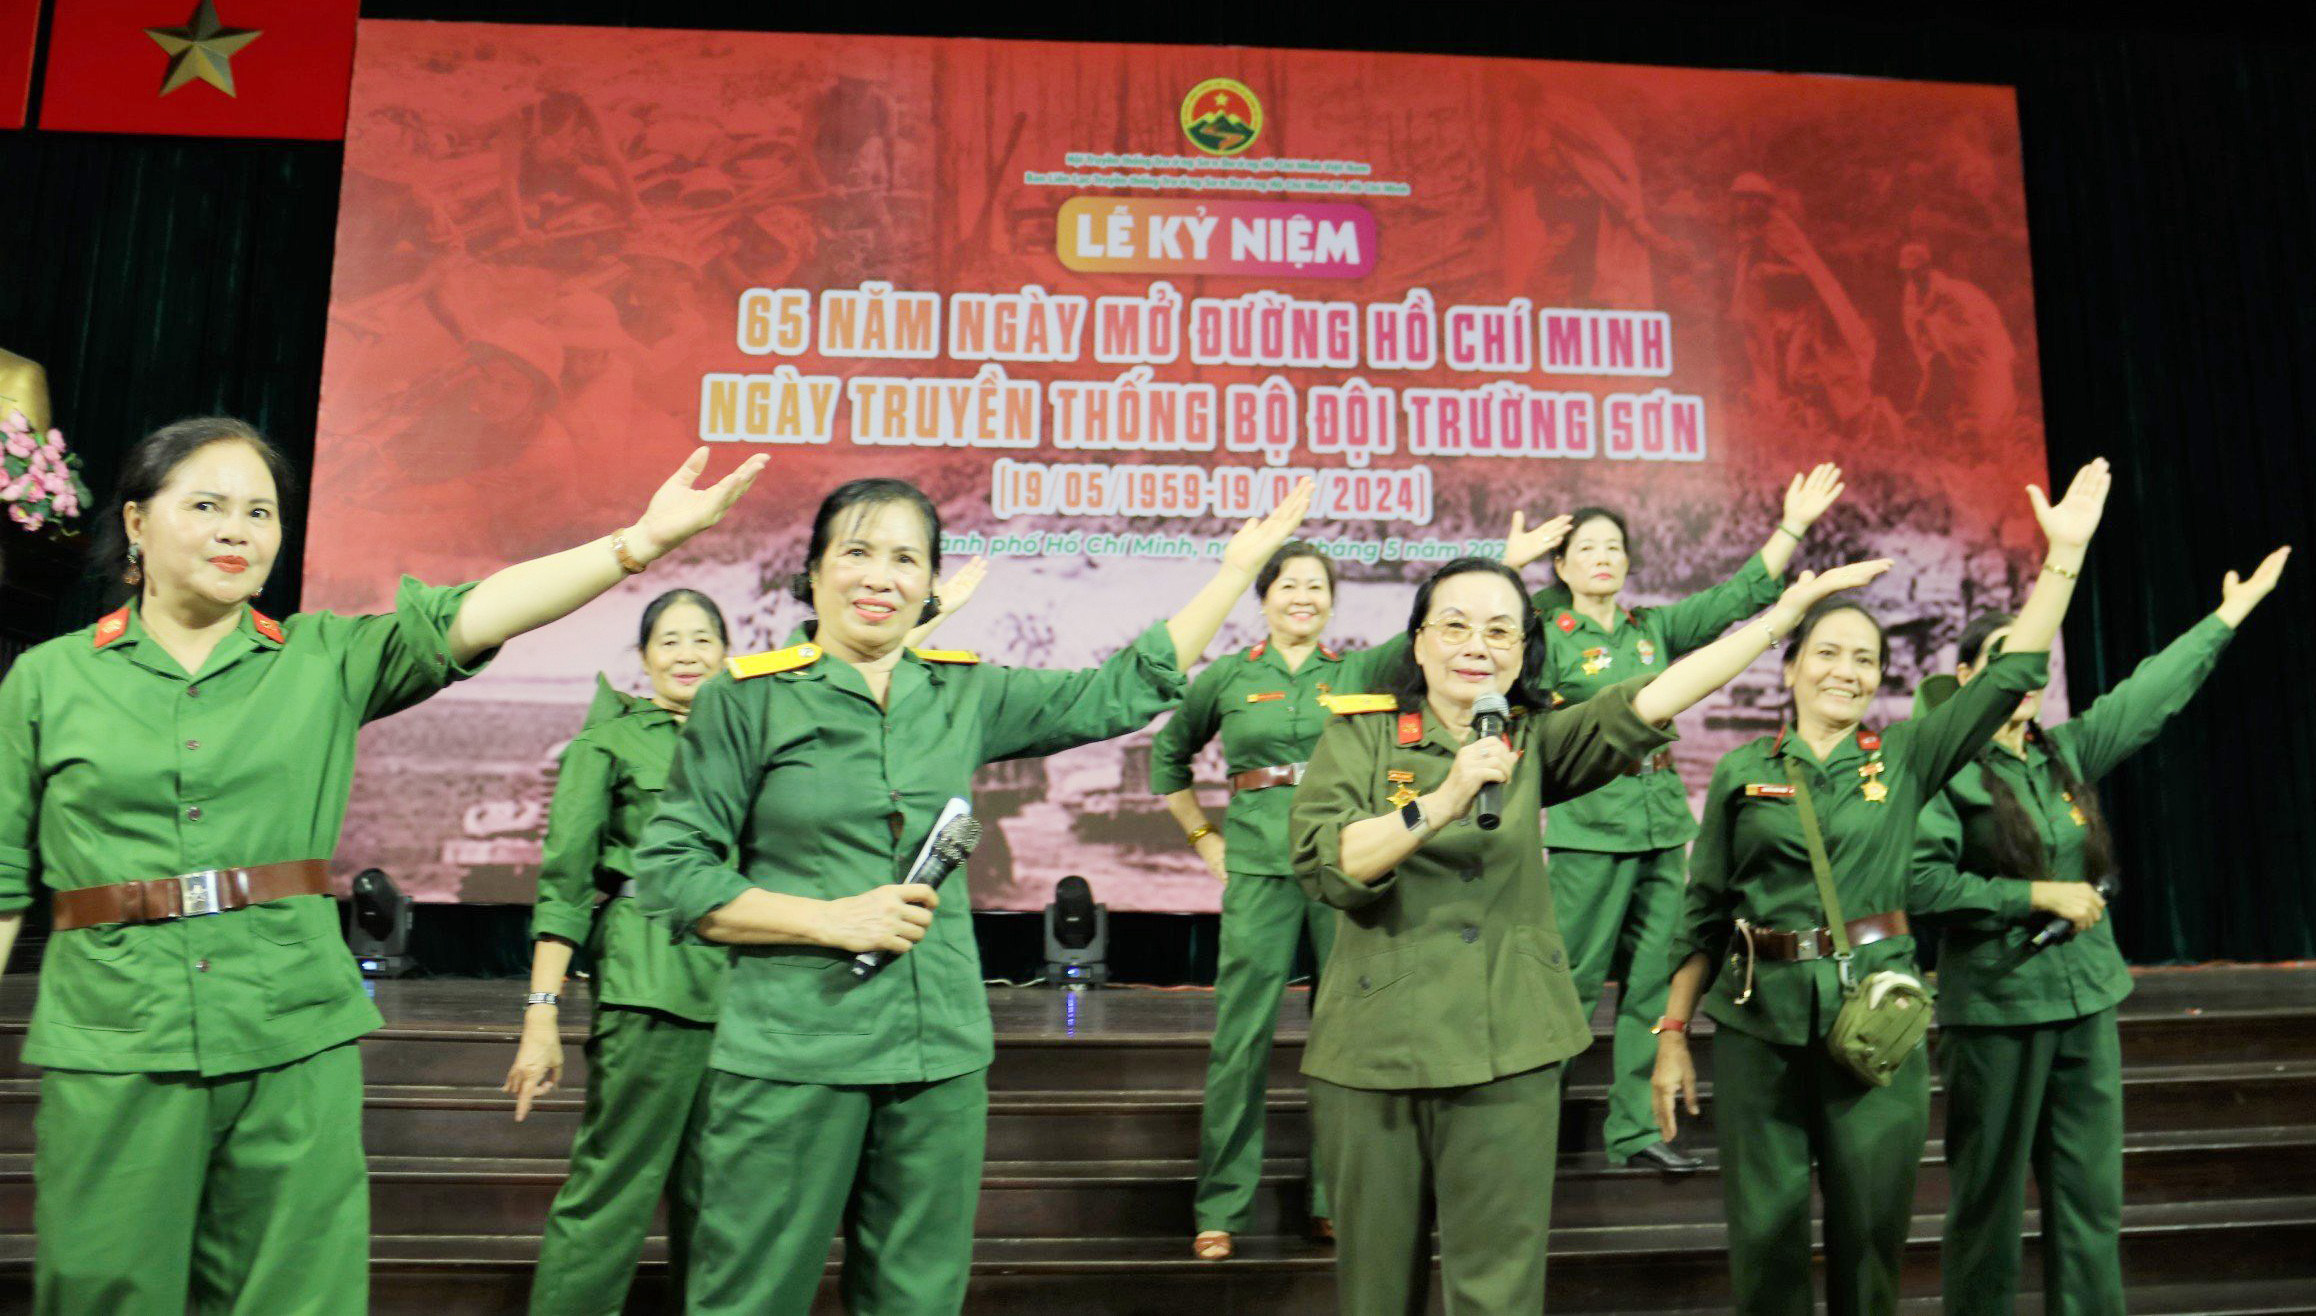 Thành phố Hồ Chí Minh - Kỷ niệm 65 năm ngày mở đường Hồ Chí Minh – ngày truyền thống bộ đội Trường Sơn